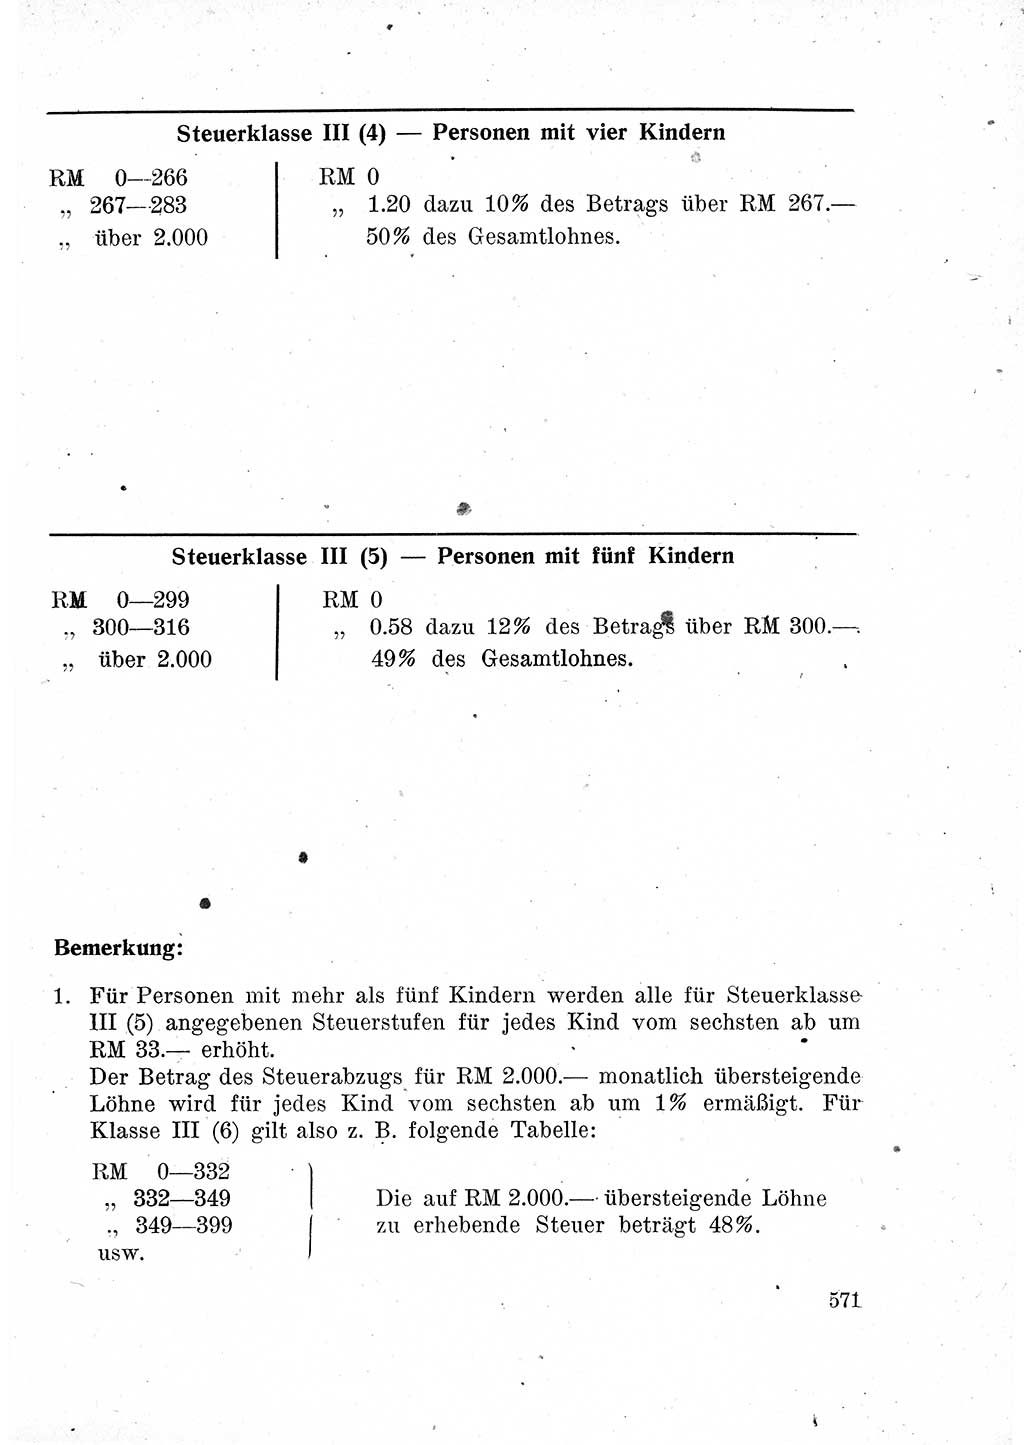 Das Recht der Besatzungsmacht (Deutschland), Proklamationen, Deklerationen, Verordnungen, Gesetze und Bekanntmachungen 1947, Seite 571 (R. Bes. Dtl. 1947, S. 571)